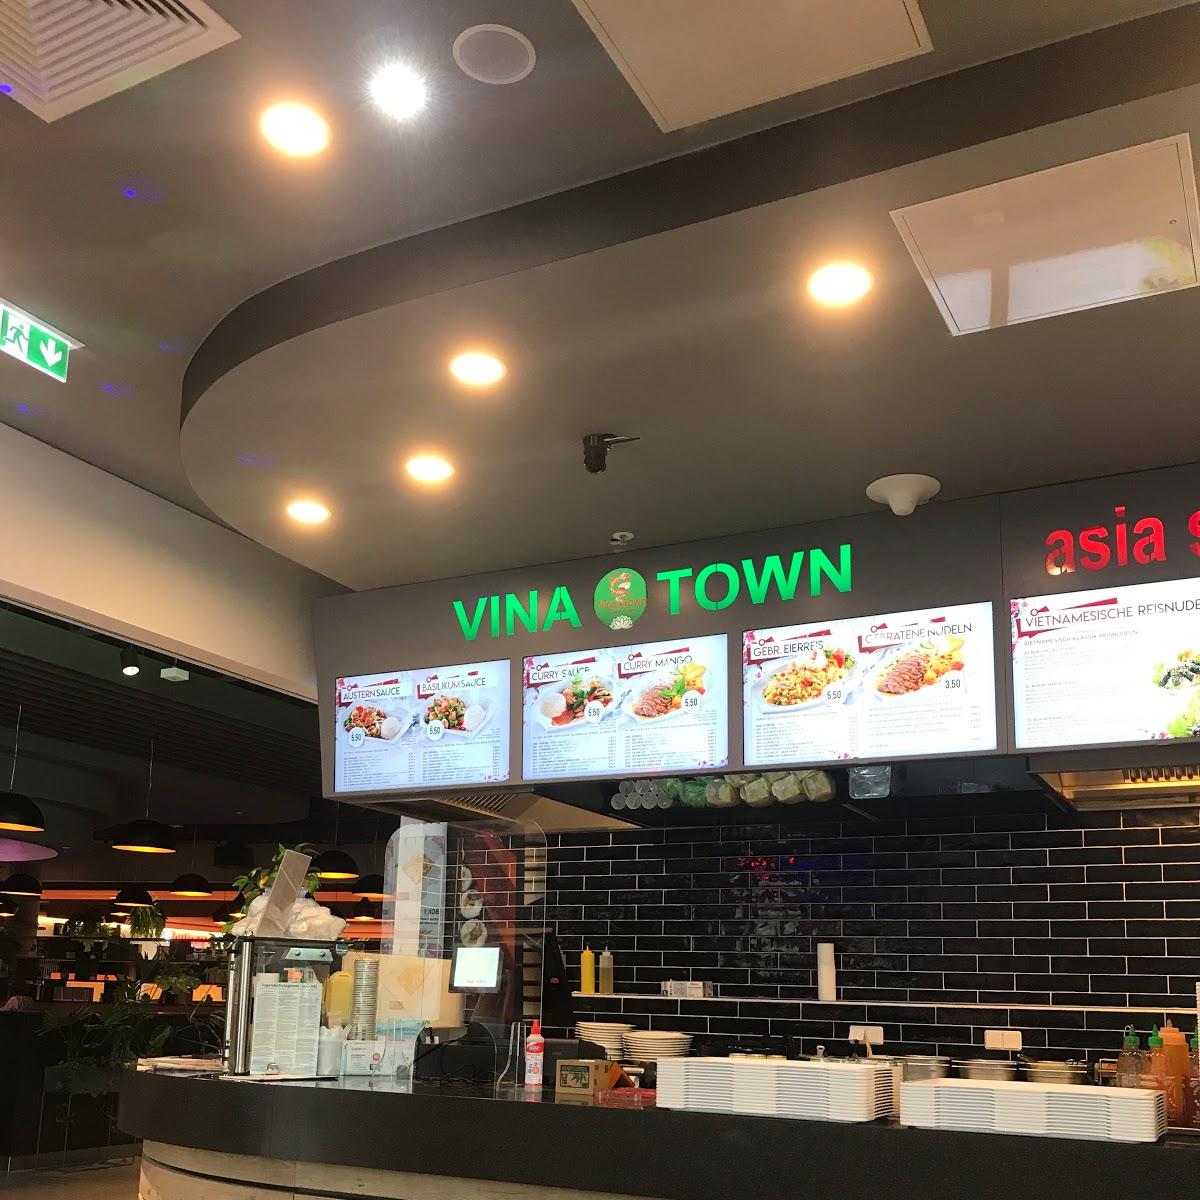 Restaurant "Vina Town" in Berlin